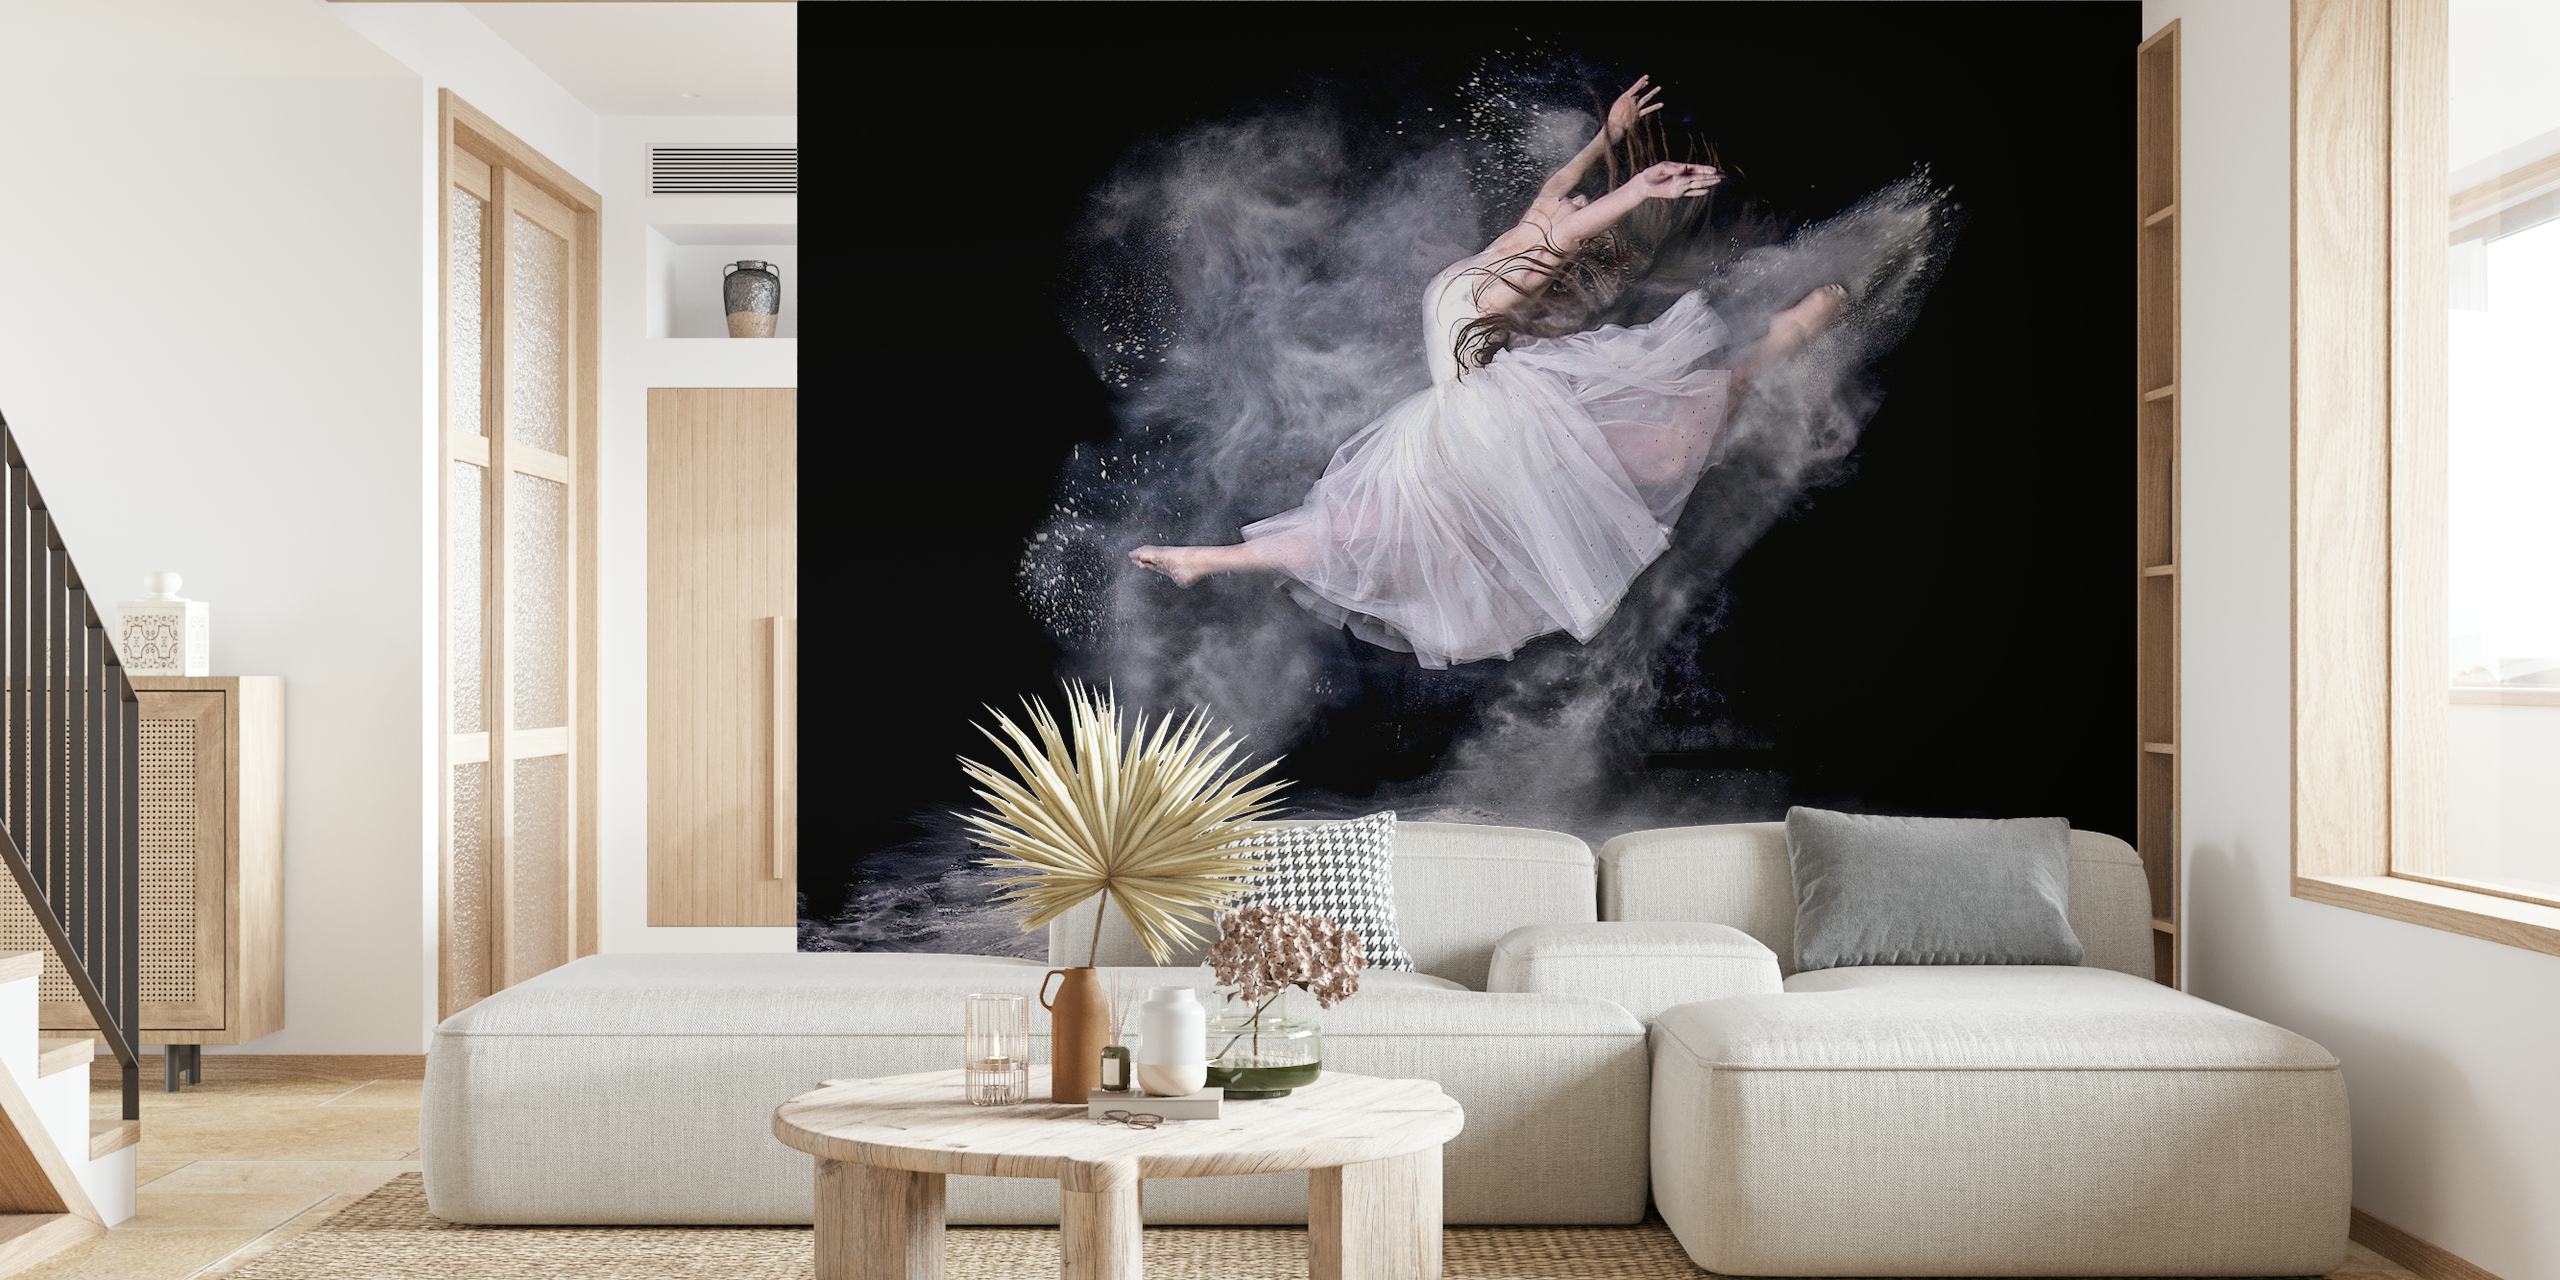 Fototapete „Balletttänzerin im Nebel“ für die Inneneinrichtung